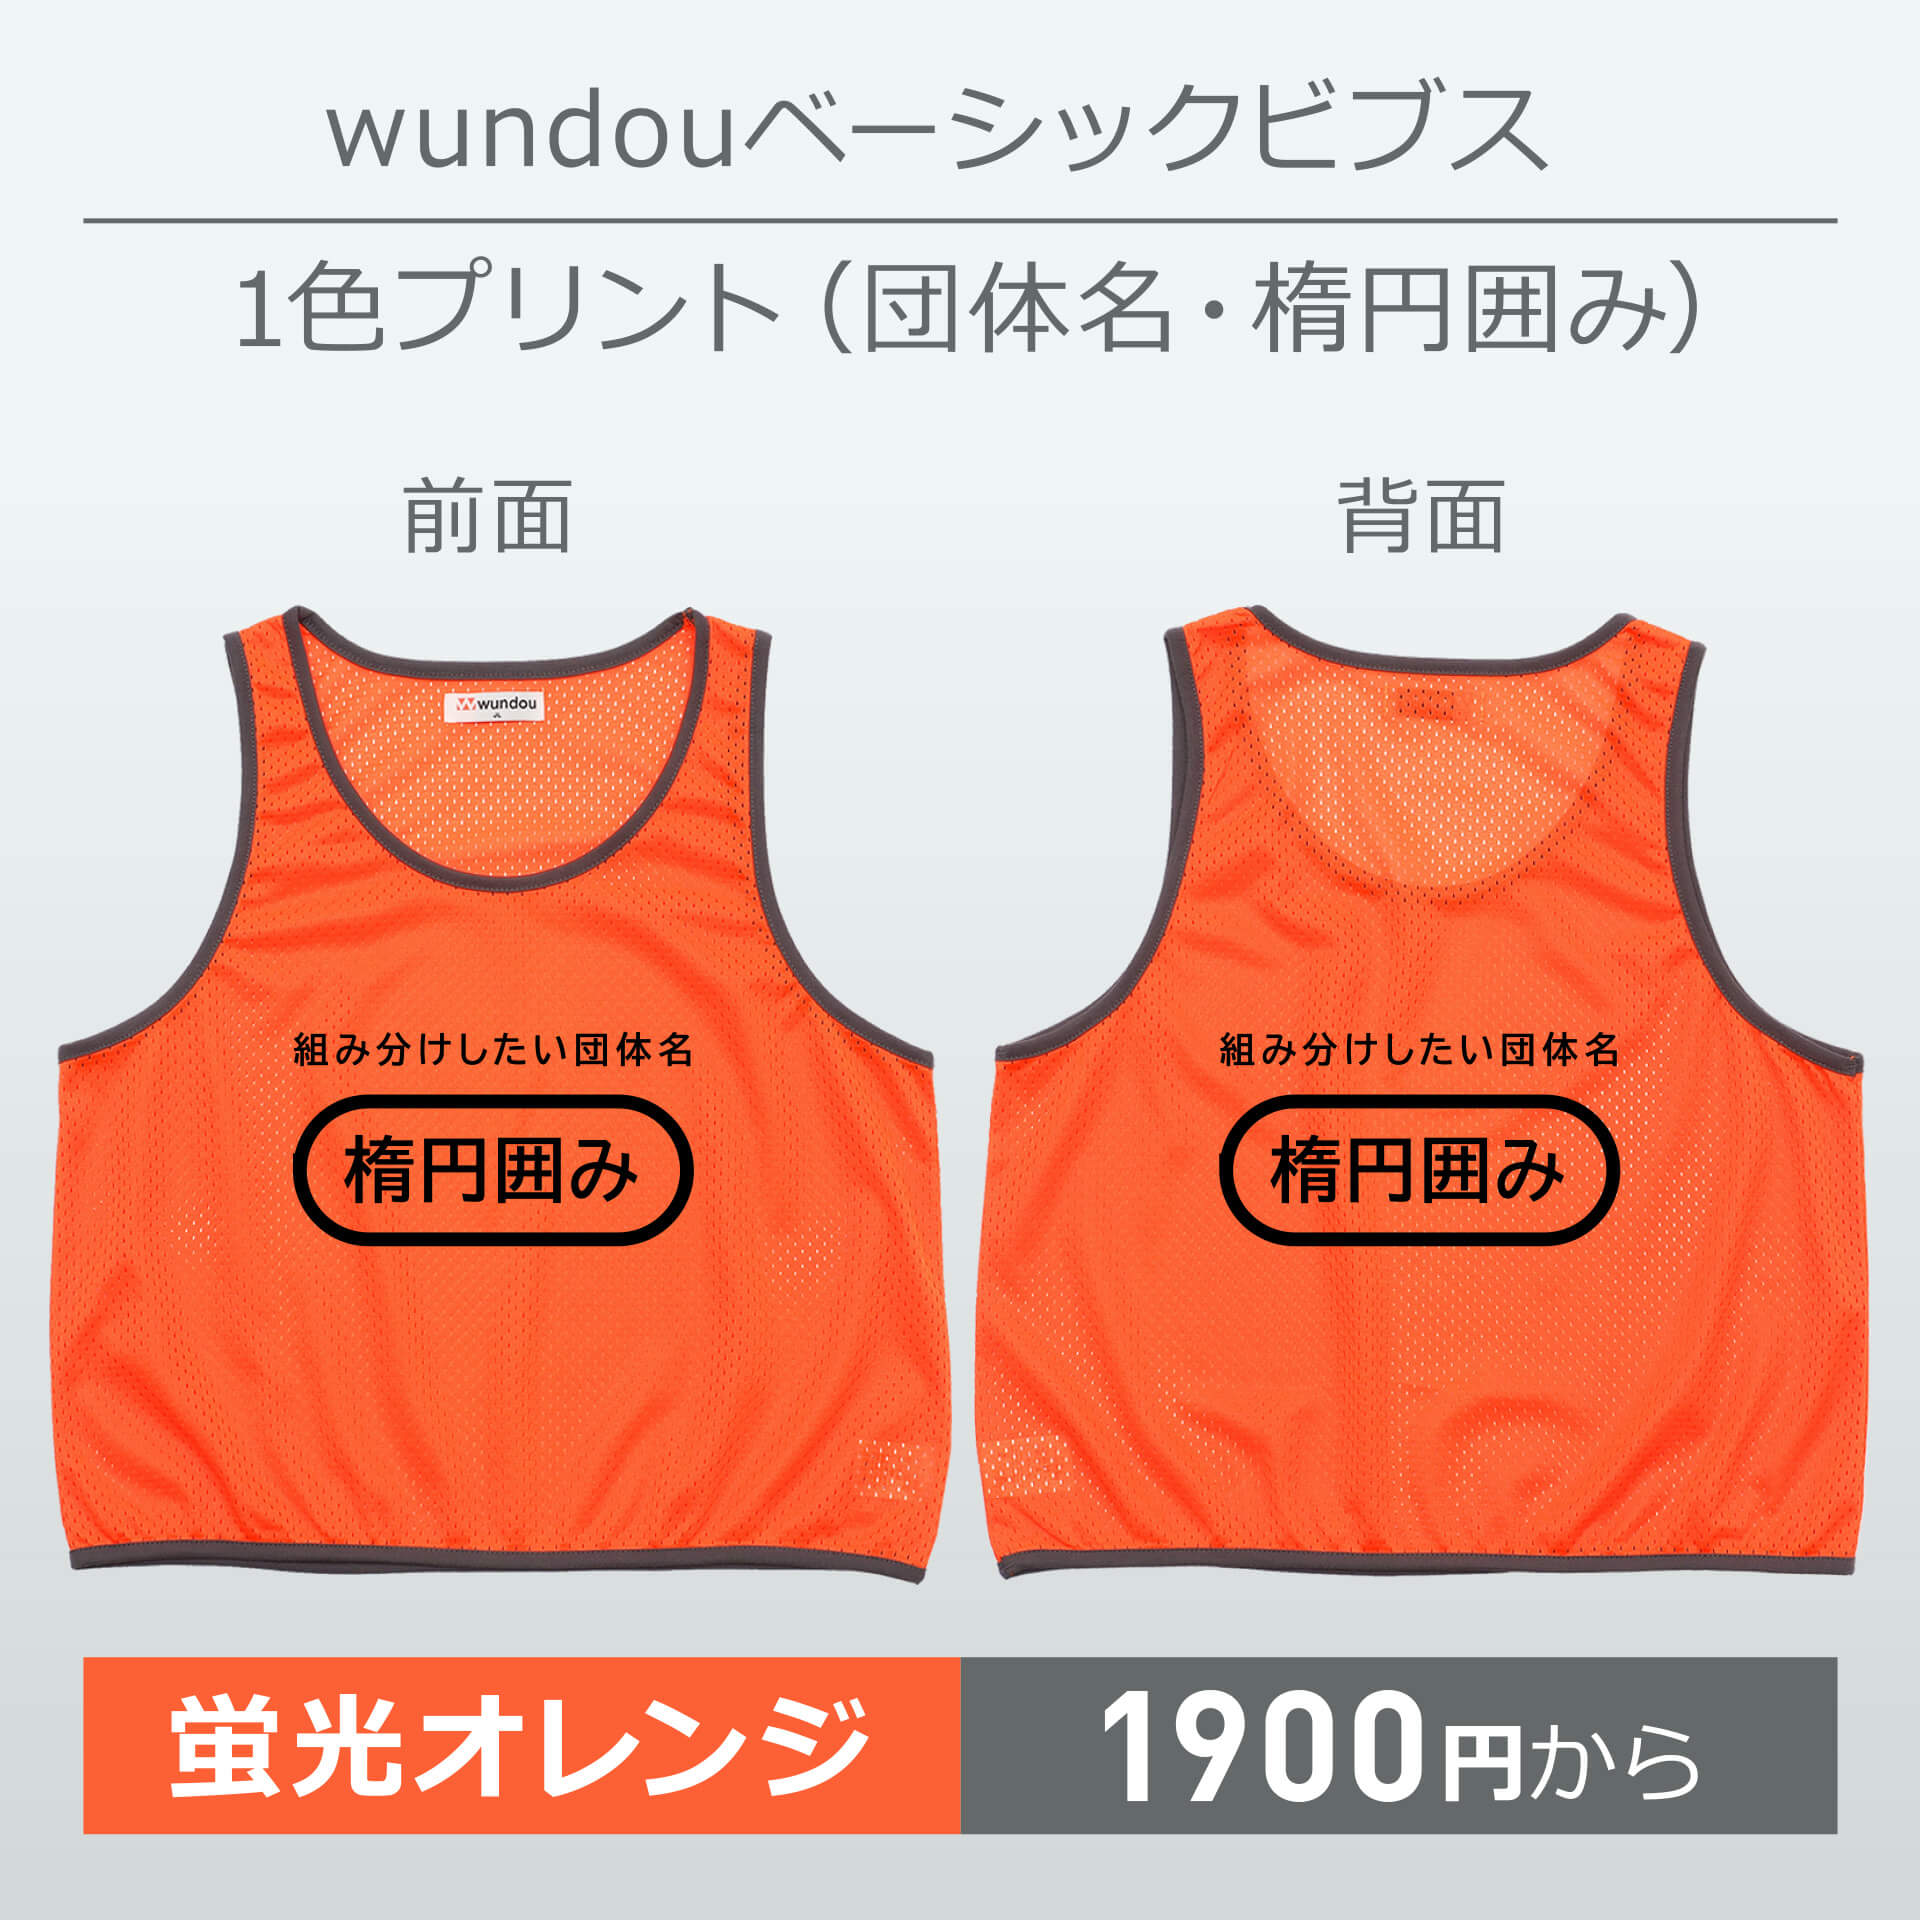 wundou・ベーシックビブス・1色プリント(団体名・楕円囲み)・蛍光オレンジ